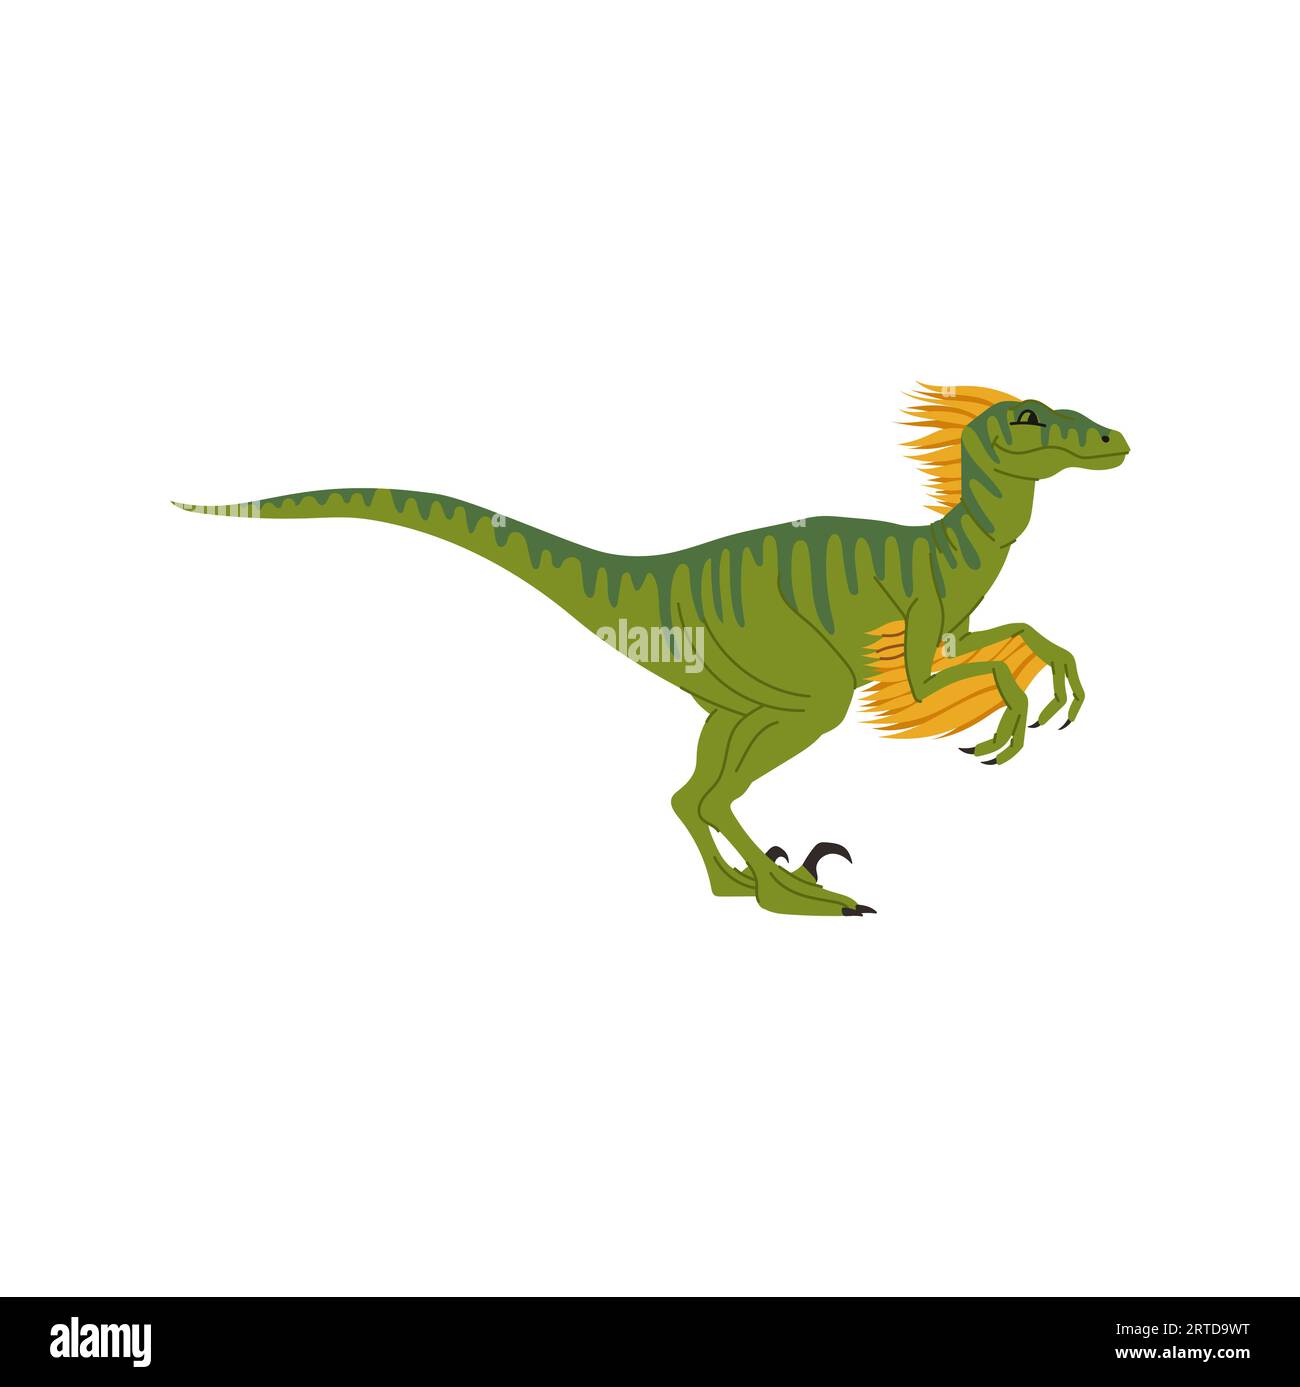 Dessin animé dino isolé animal dinosaure, jouet pour enfants. Dinosaure ornithopode vecteur, modèle robot walkeri dino. Dinosaure éteint t-rex préhistorique Illustration de Vecteur